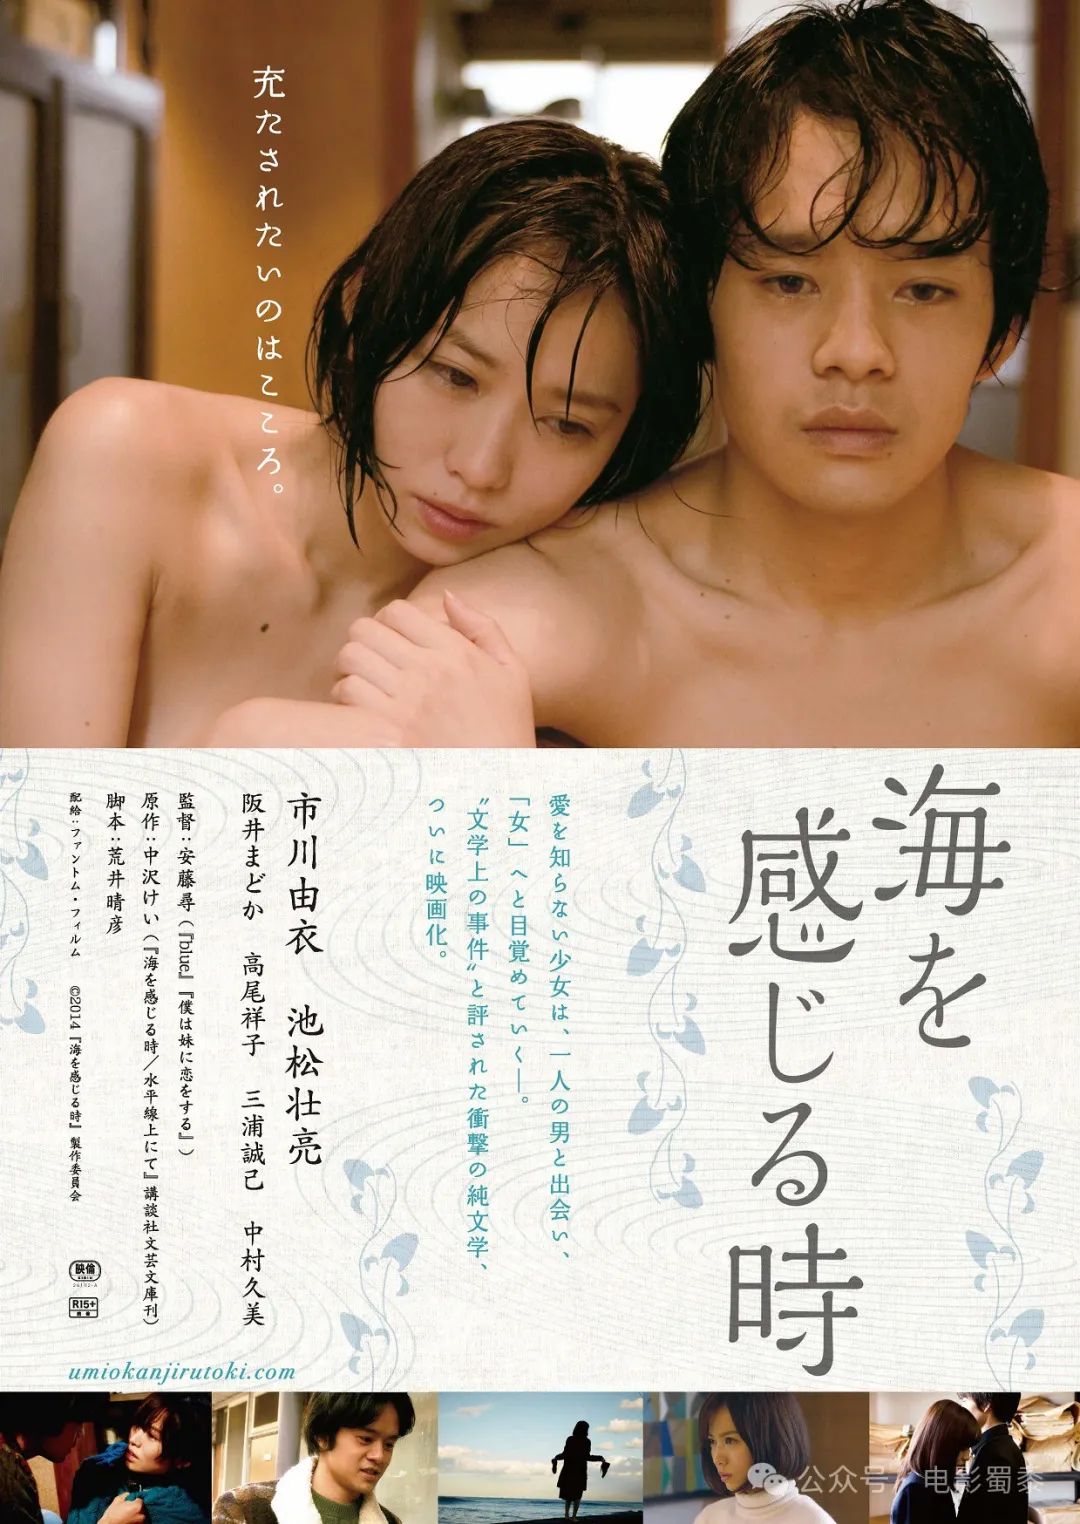 6部大尺度日本爱情电影，也只有日本才敢这么拍！配图-电影推荐